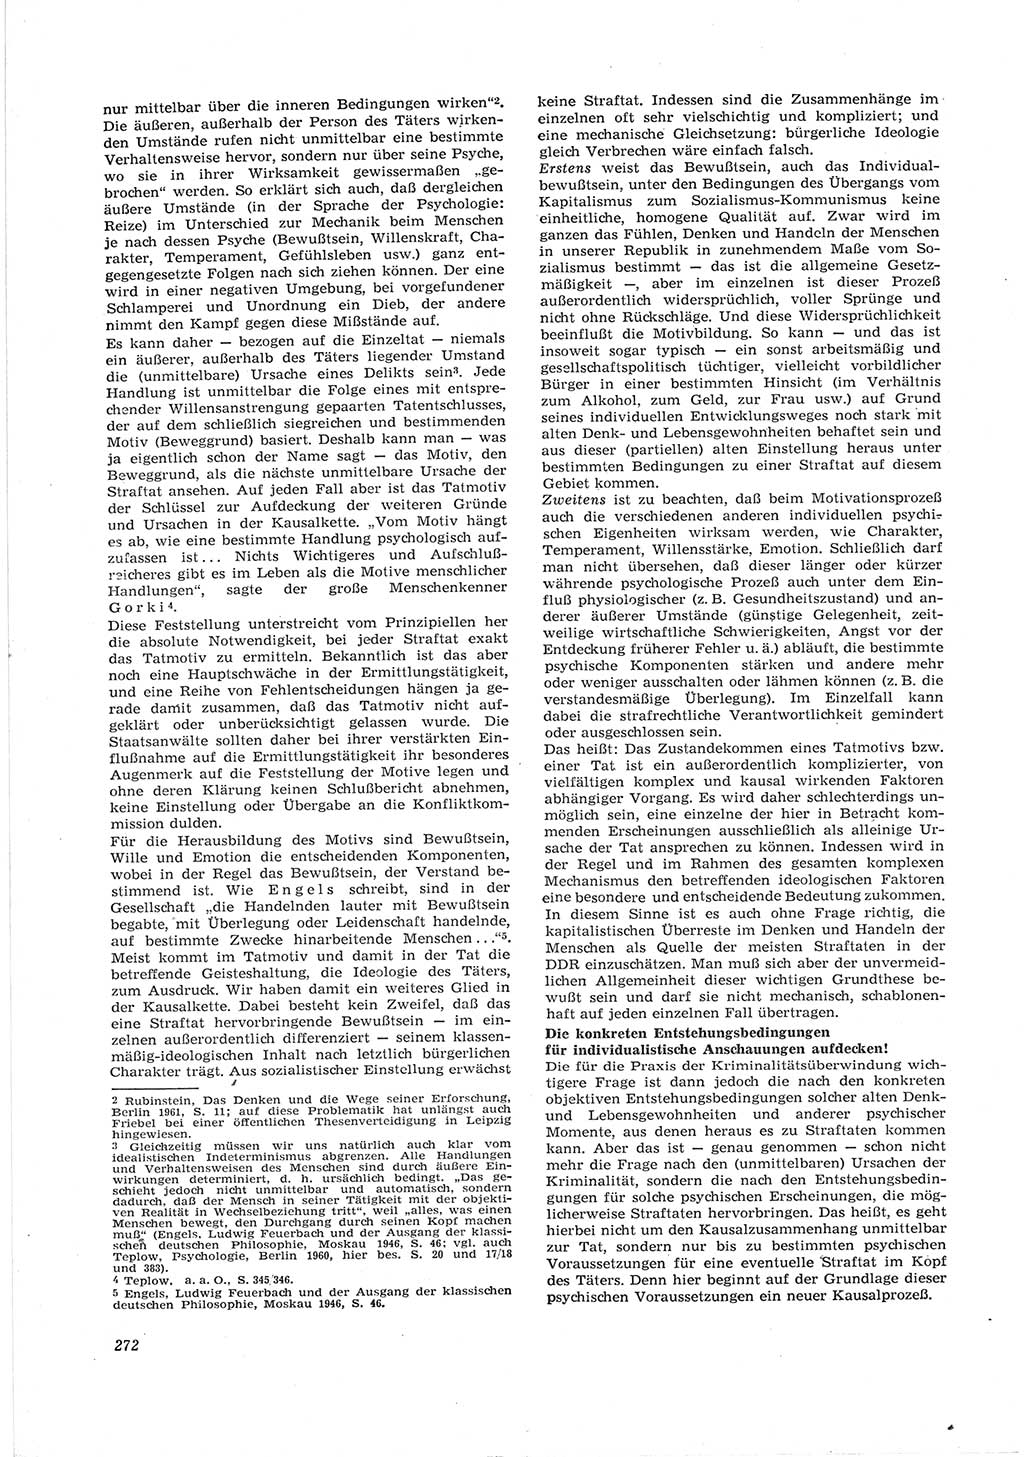 Neue Justiz (NJ), Zeitschrift für Recht und Rechtswissenschaft [Deutsche Demokratische Republik (DDR)], 17. Jahrgang 1963, Seite 272 (NJ DDR 1963, S. 272)